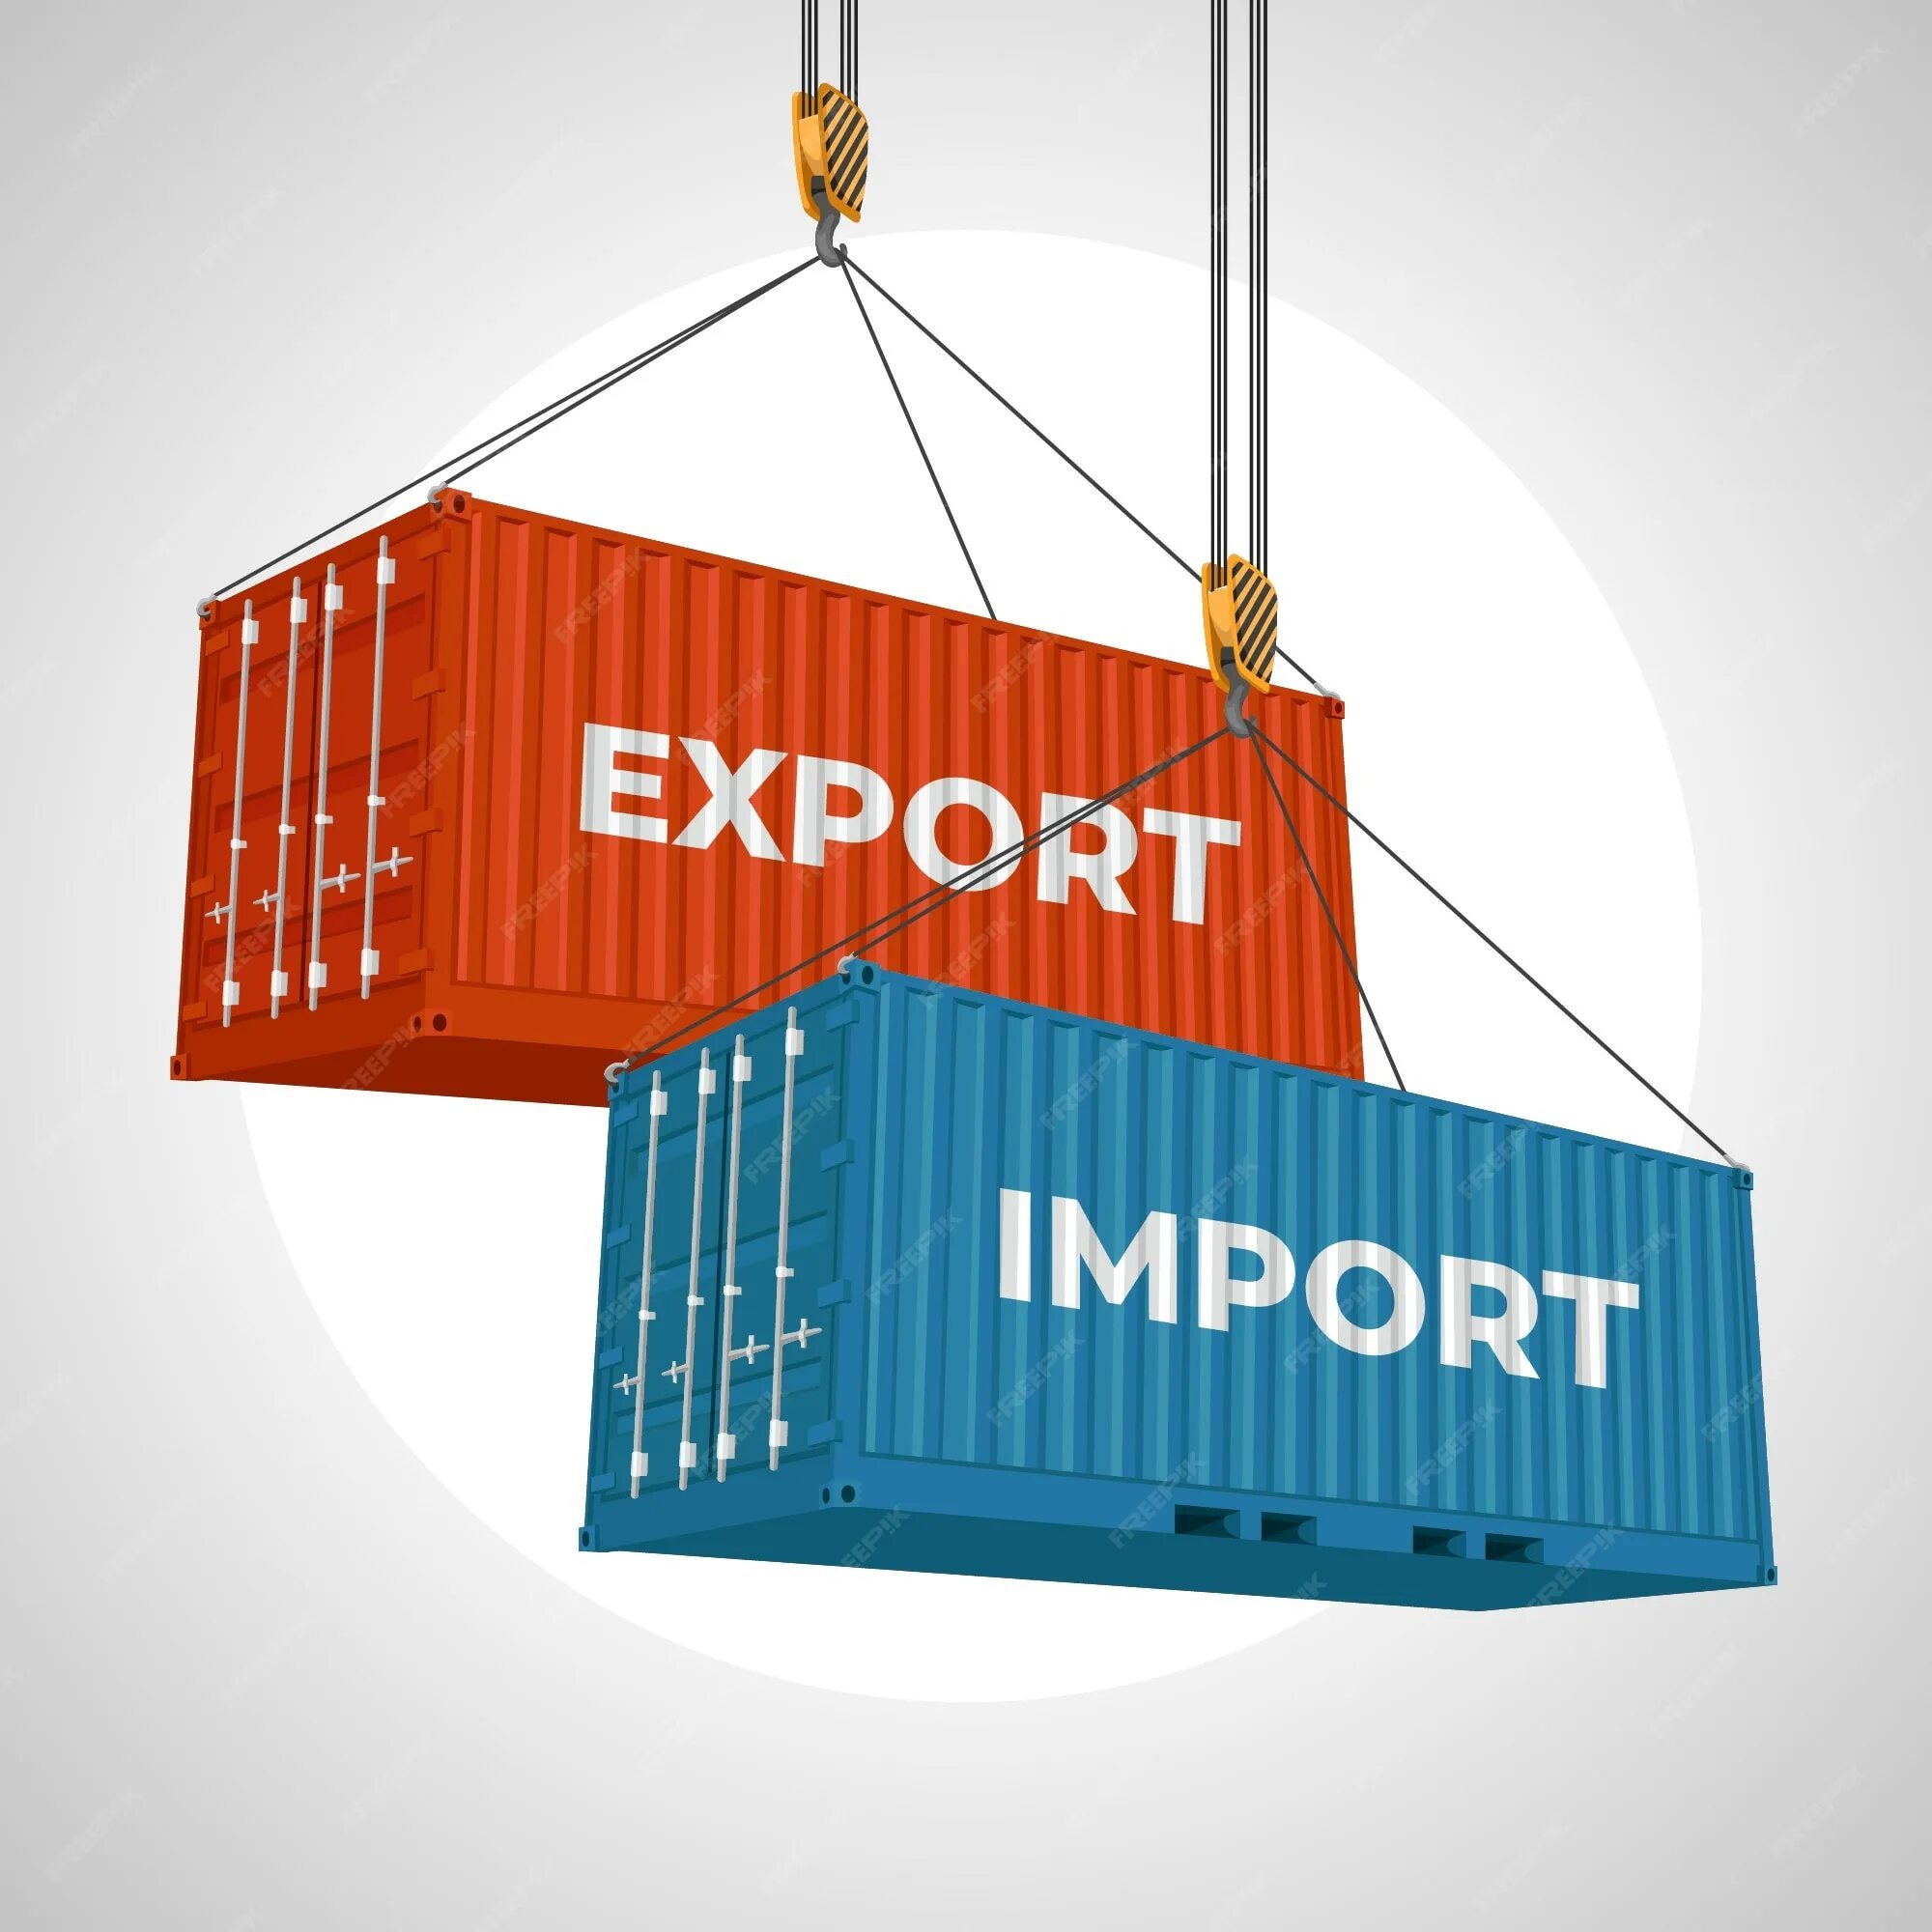 Экспорт и импорт. Экспорт товаров. Импорт иллюстрация. Экспорт и импорт картинки. Import saves